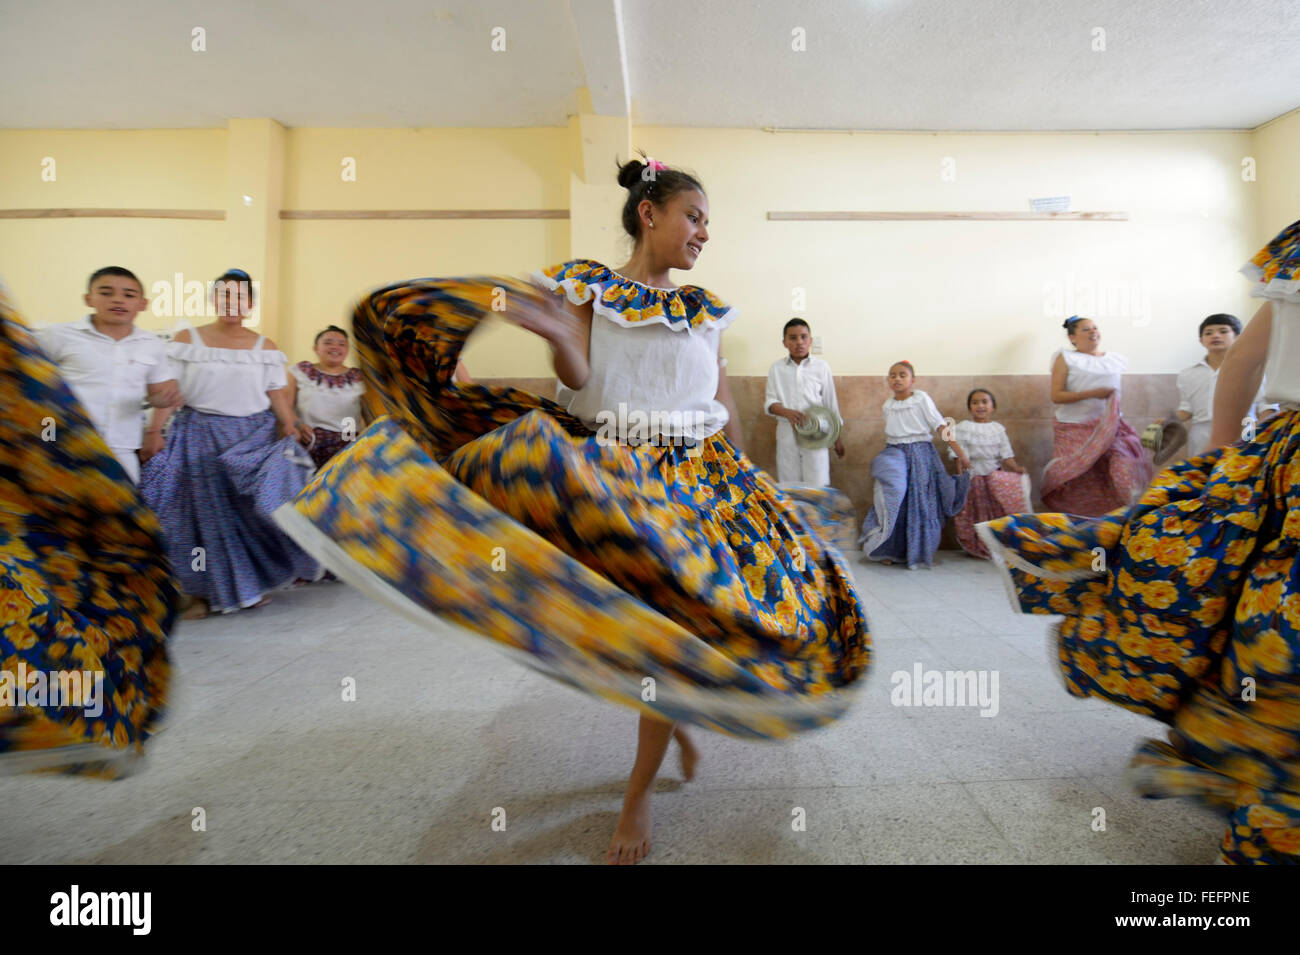 Jupe fille danser, voler, groupe de danse, danse folklorique, danse traditionnelle, Barrio San Martín, Bogotá, Colombie Banque D'Images